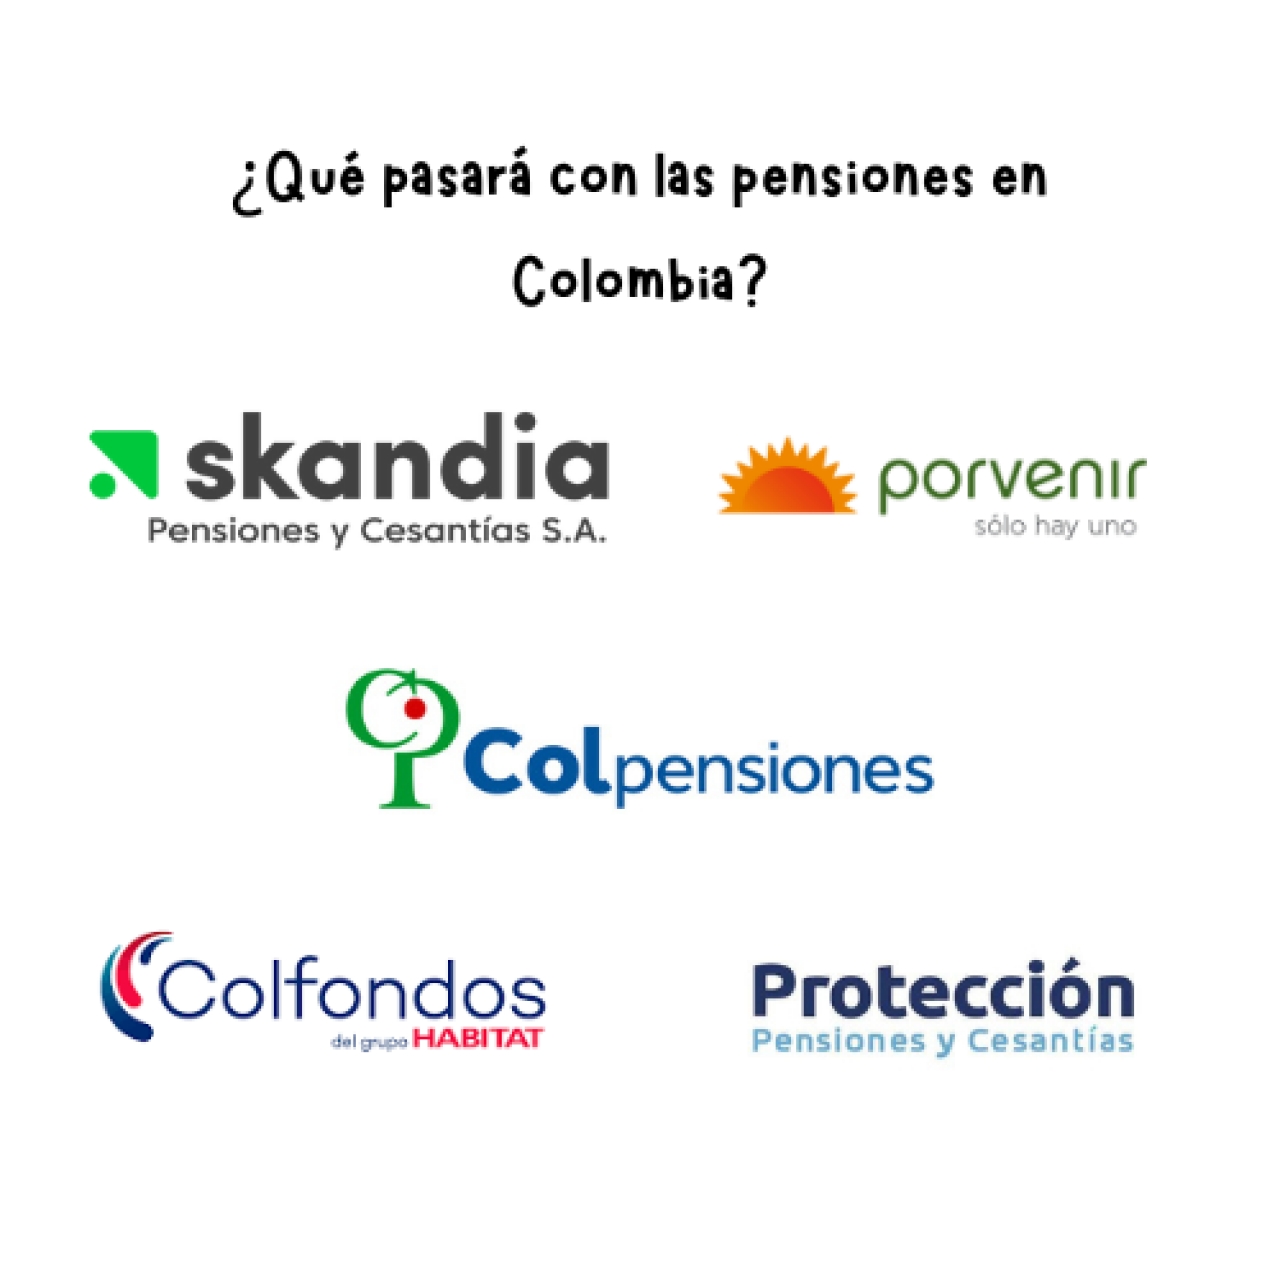 Collage fondos de pensiones en Colombia|||